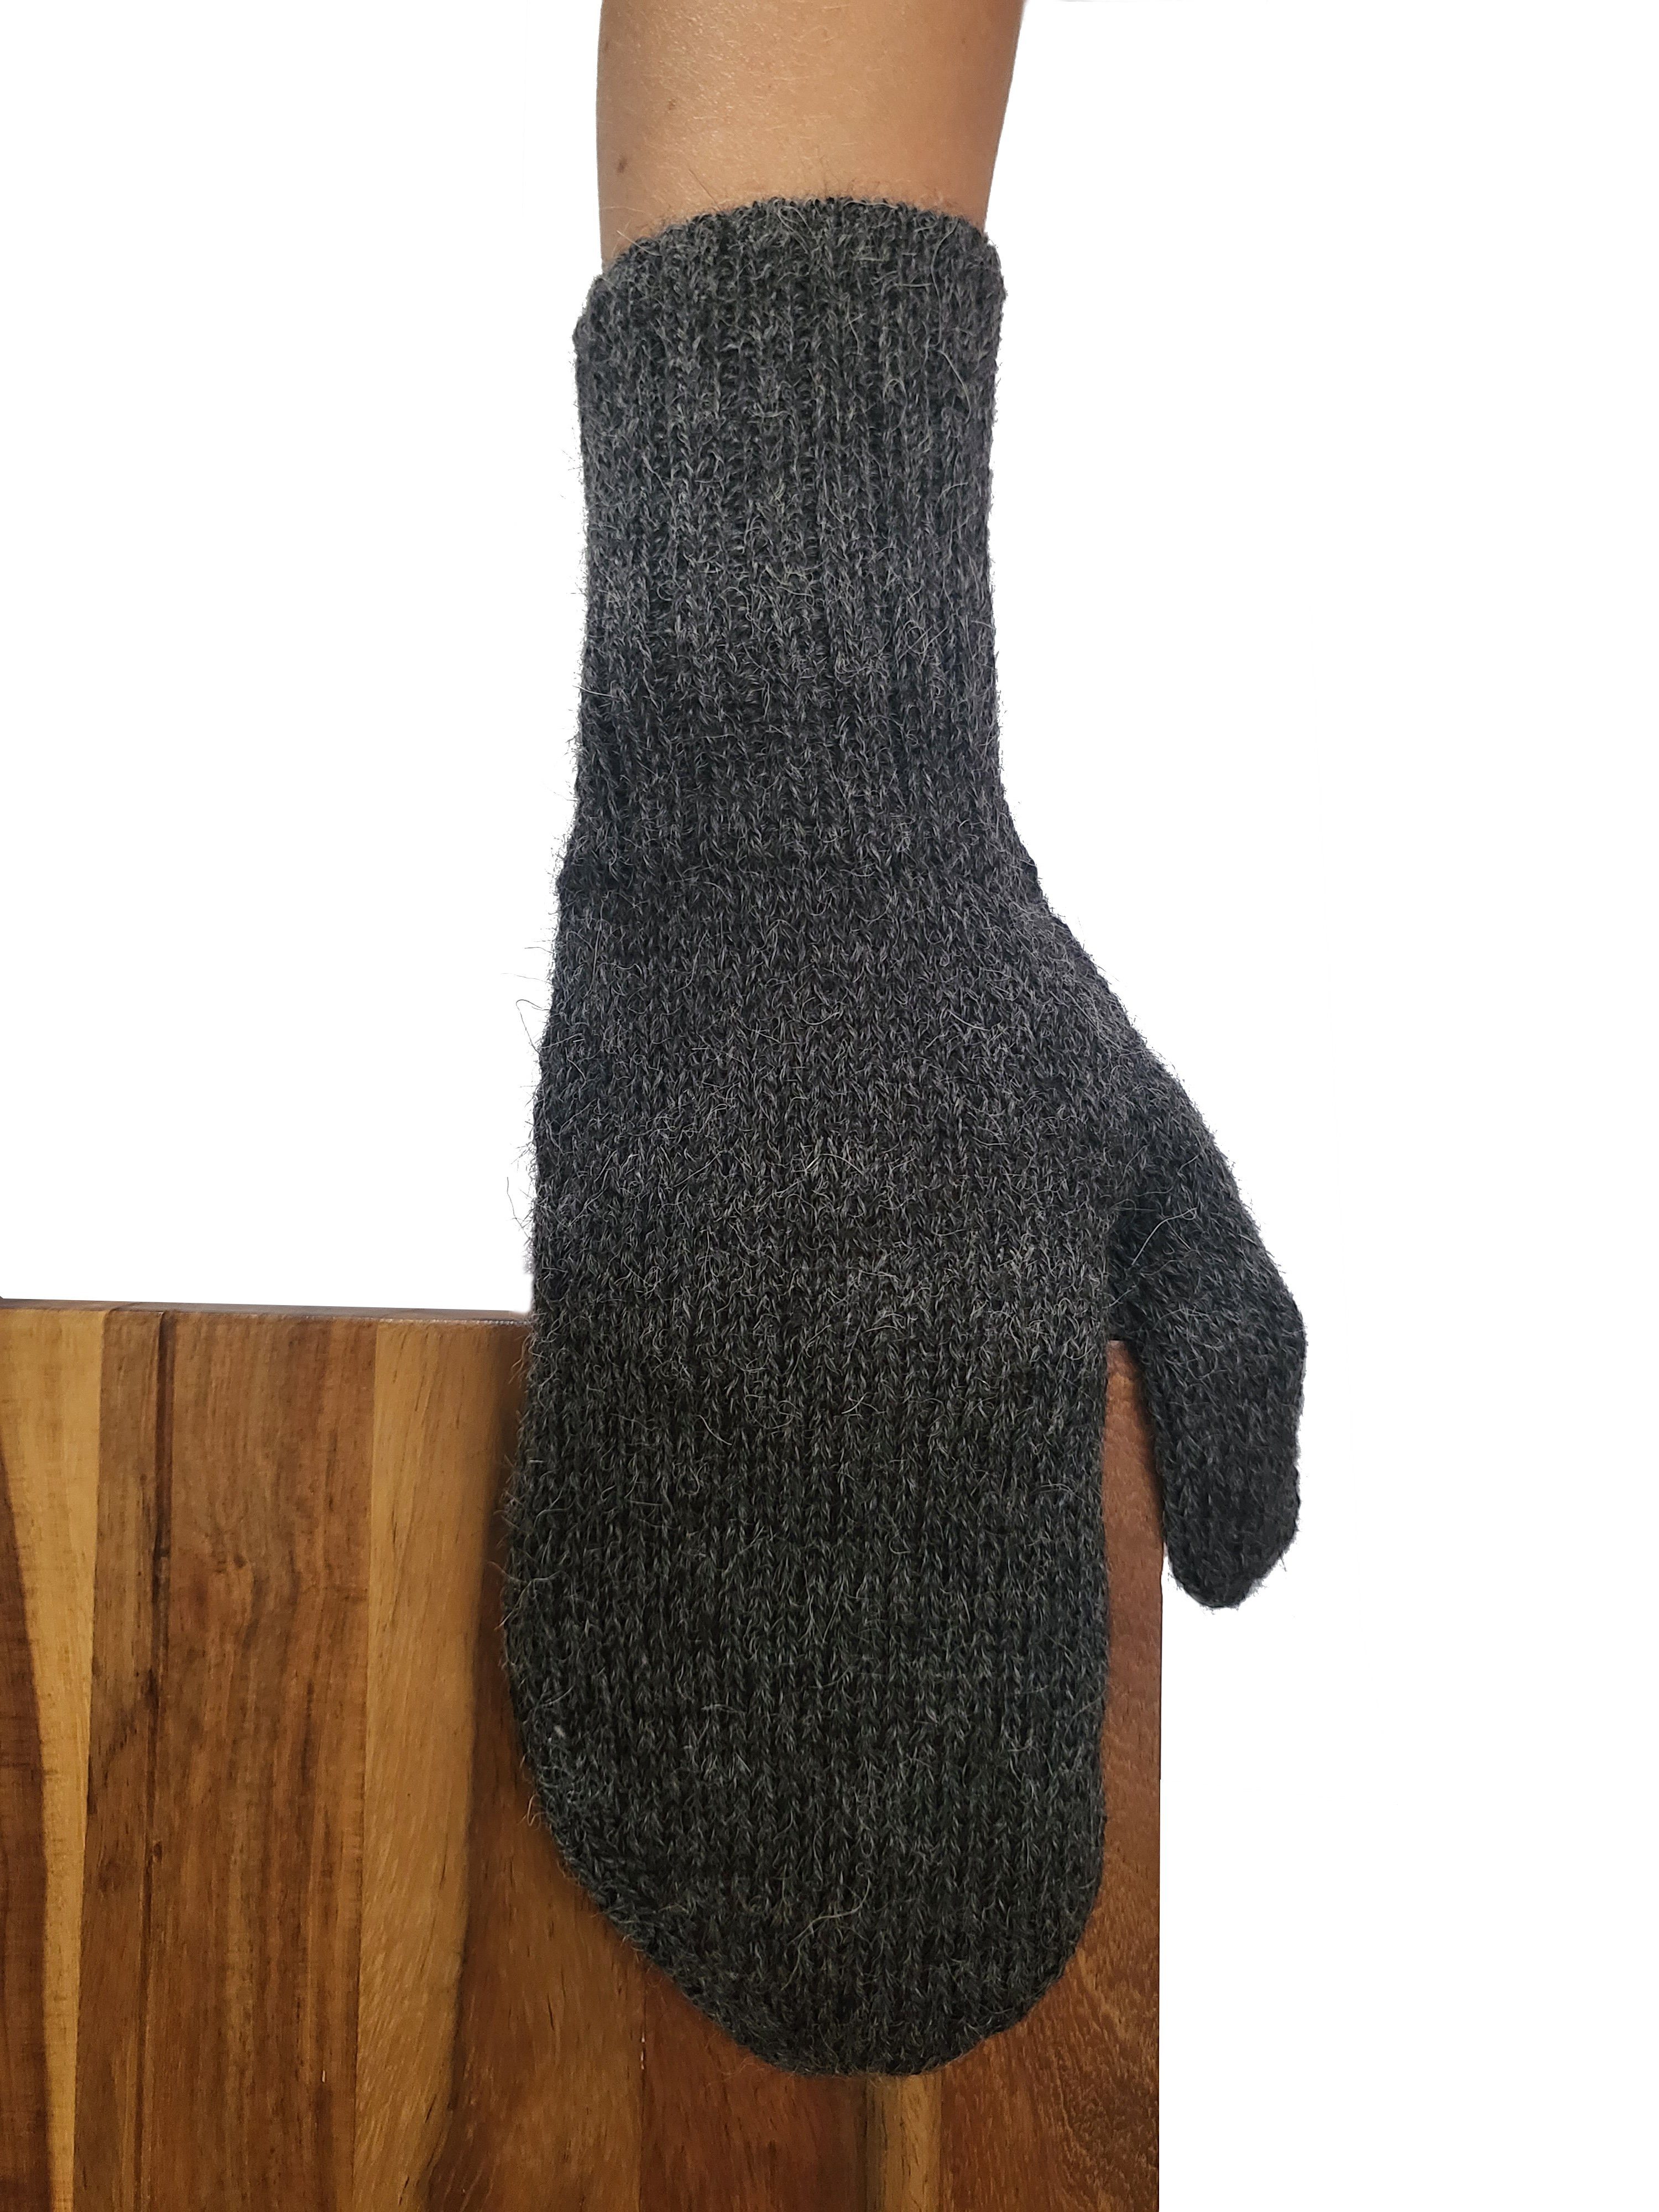 Posh Gear Fäustlinge Alpaka Handschuhe Pugnoguanti Damen Herren aus 100% Alpakawolle dunkel grau